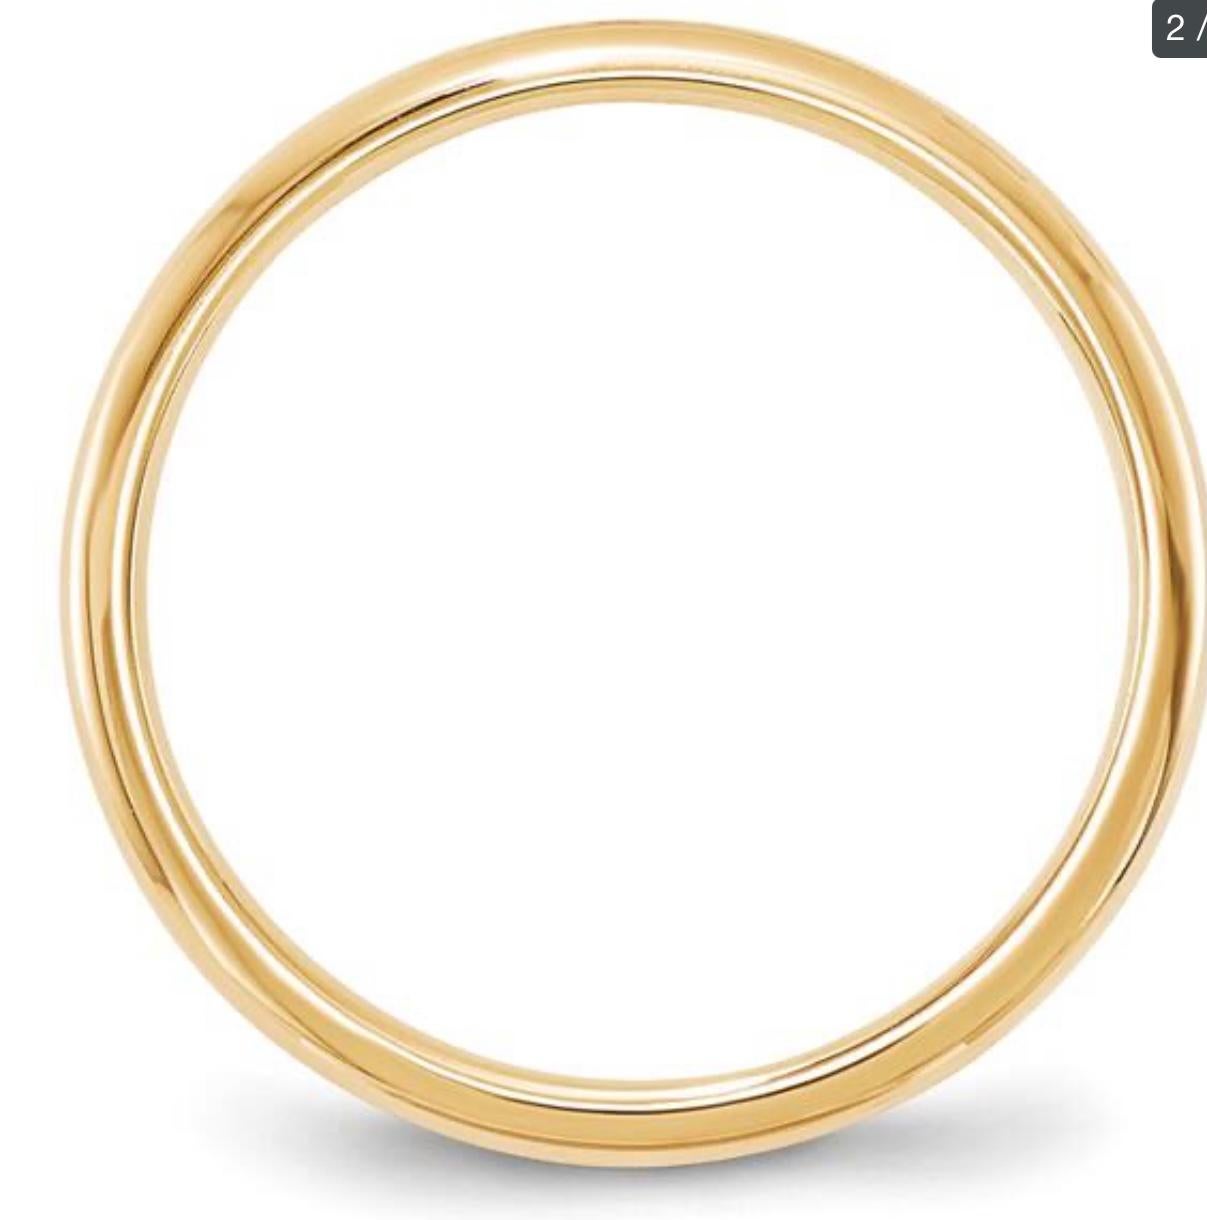 Alliance classique en or jaune 14 carats avec demi-anneau rond, paire de bagues en or massif 2